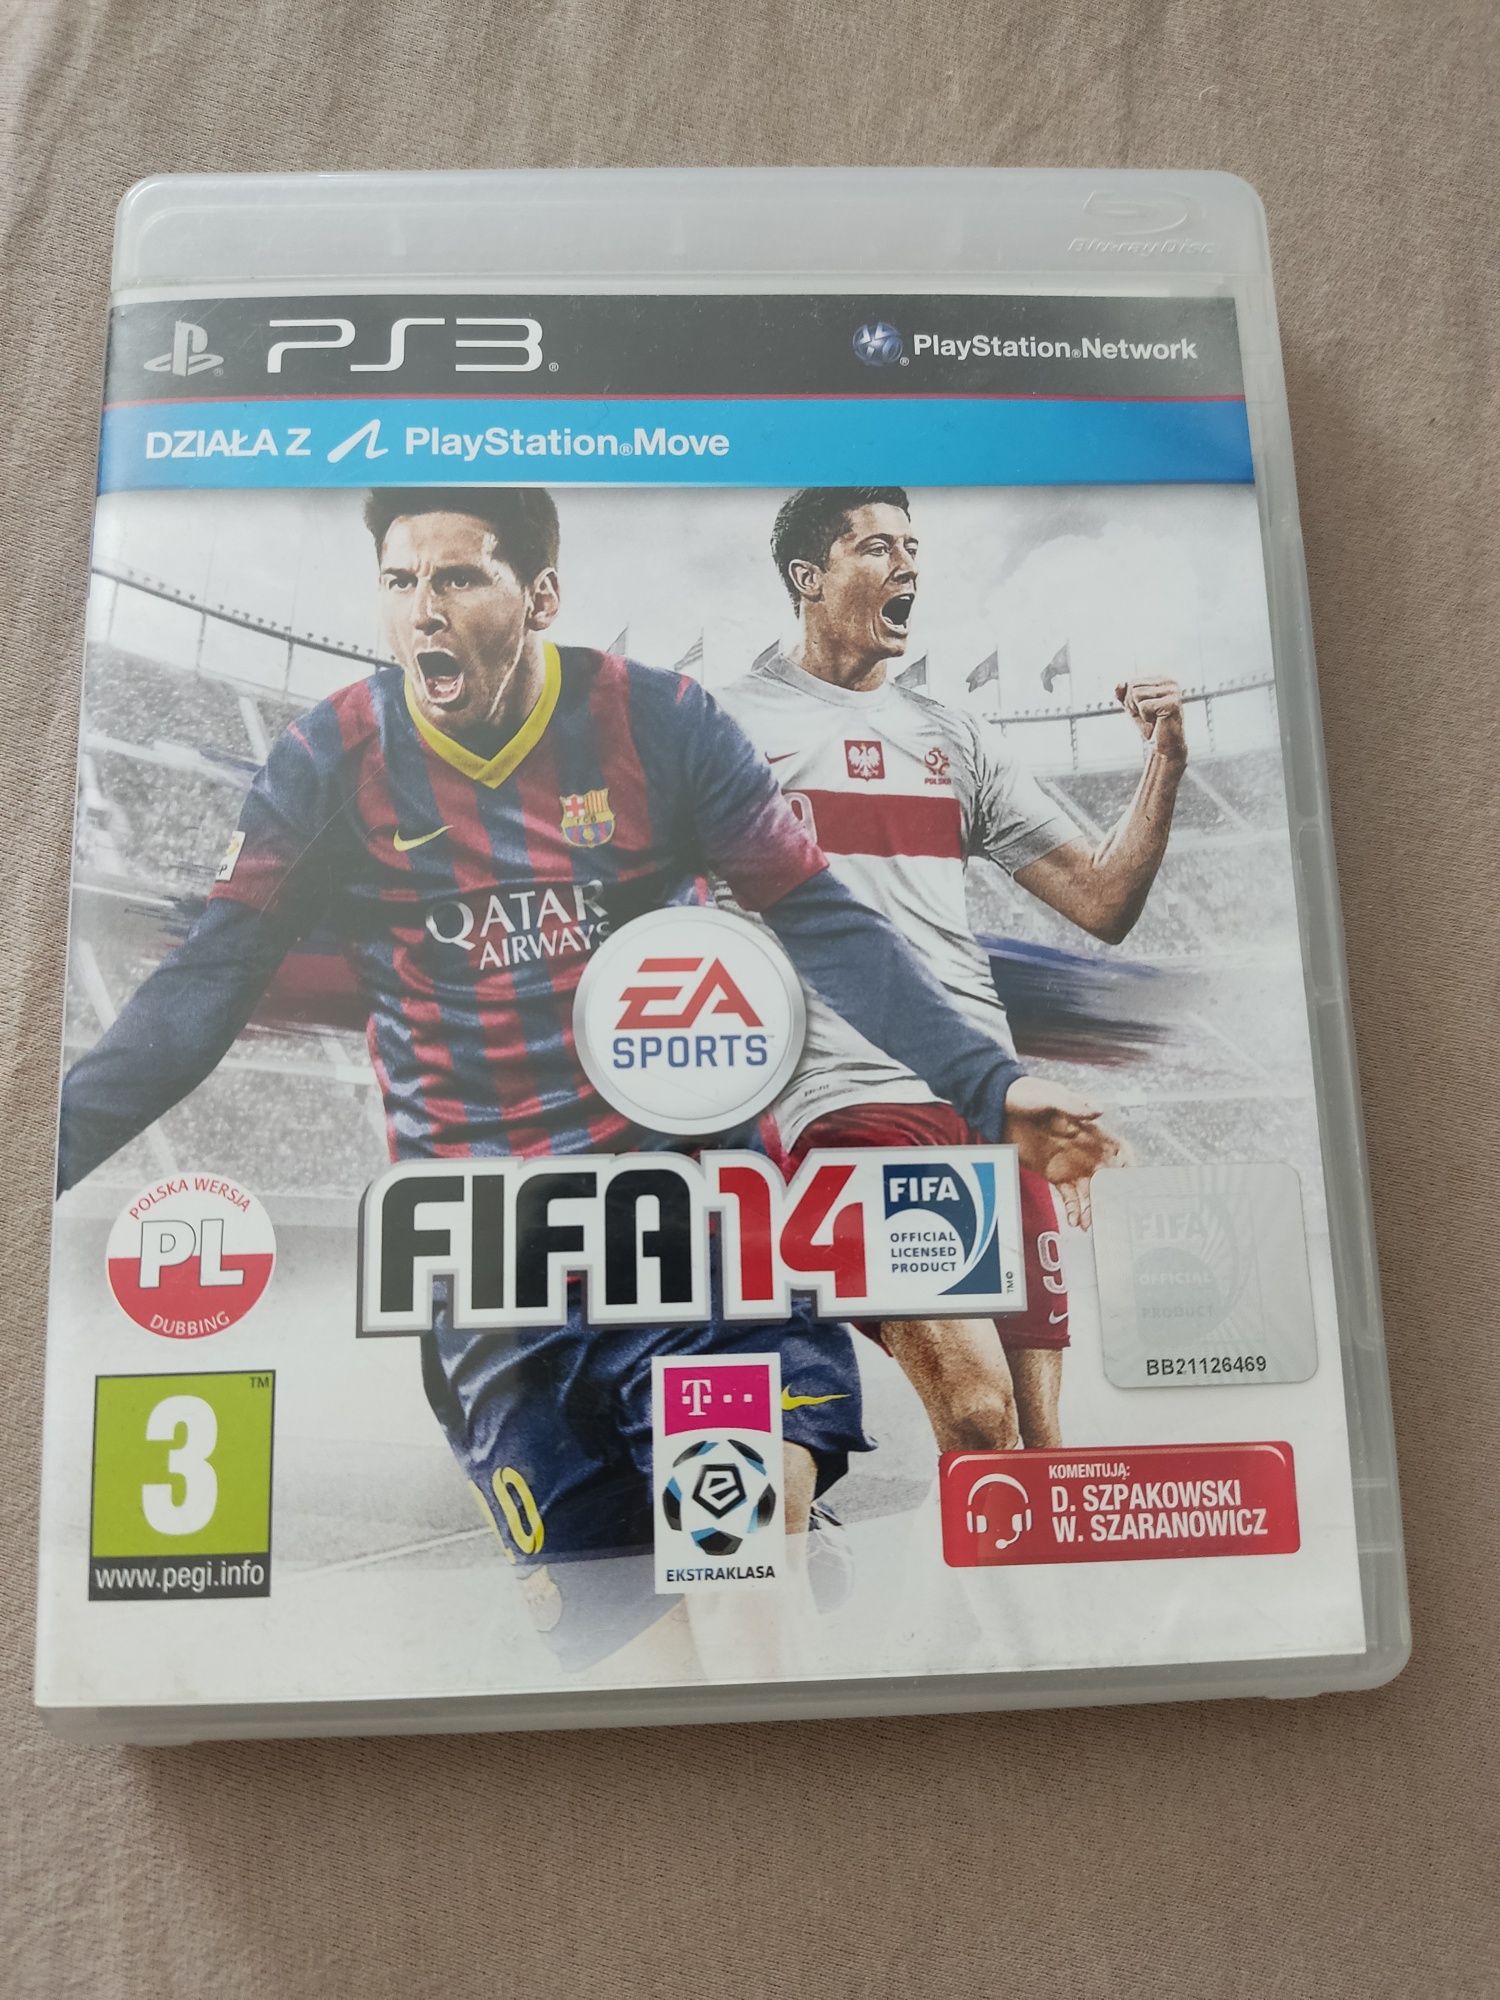 FIFA 14 PS3 PlayStation 3